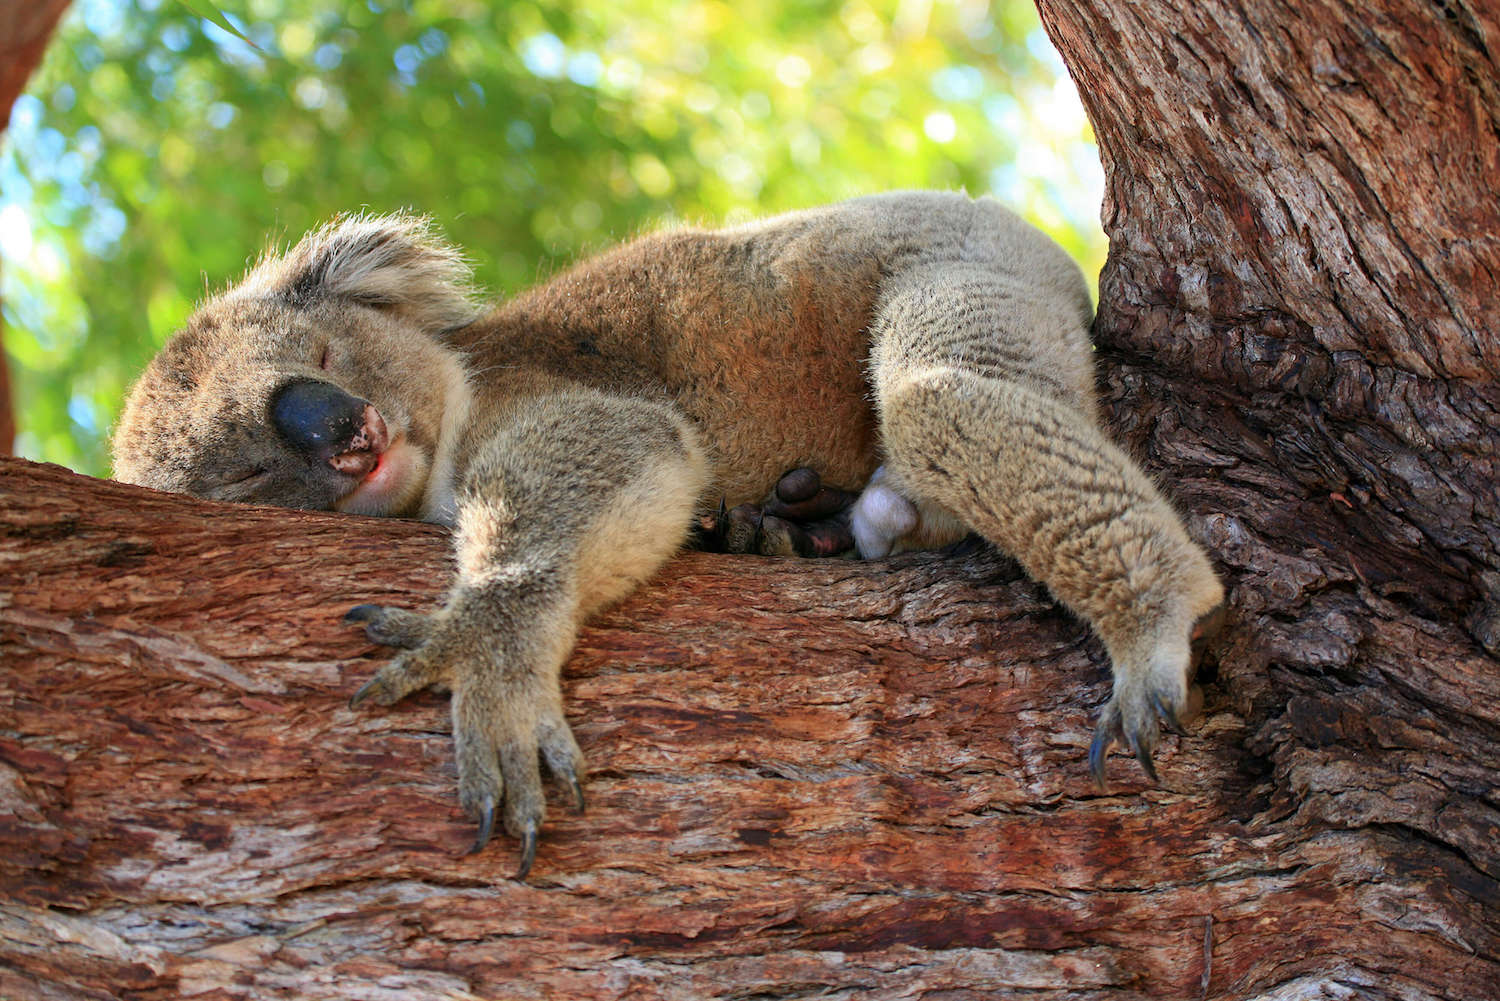 Where did all the koalas go